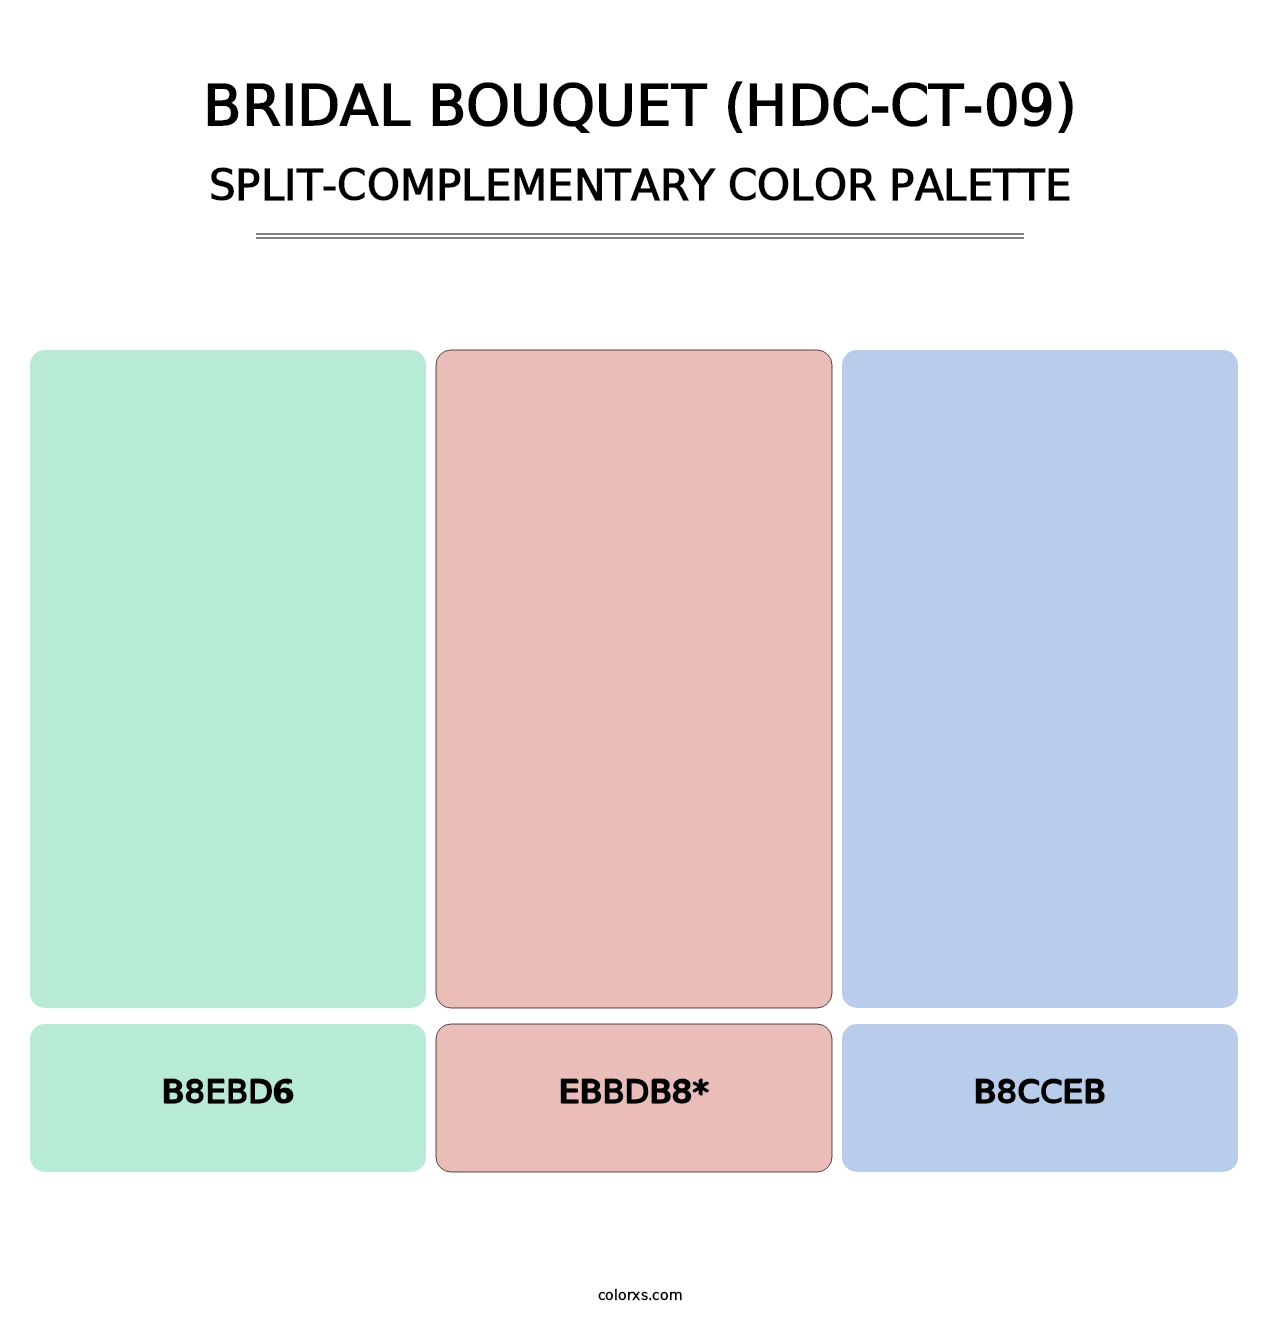 Bridal Bouquet (HDC-CT-09) - Split-Complementary Color Palette